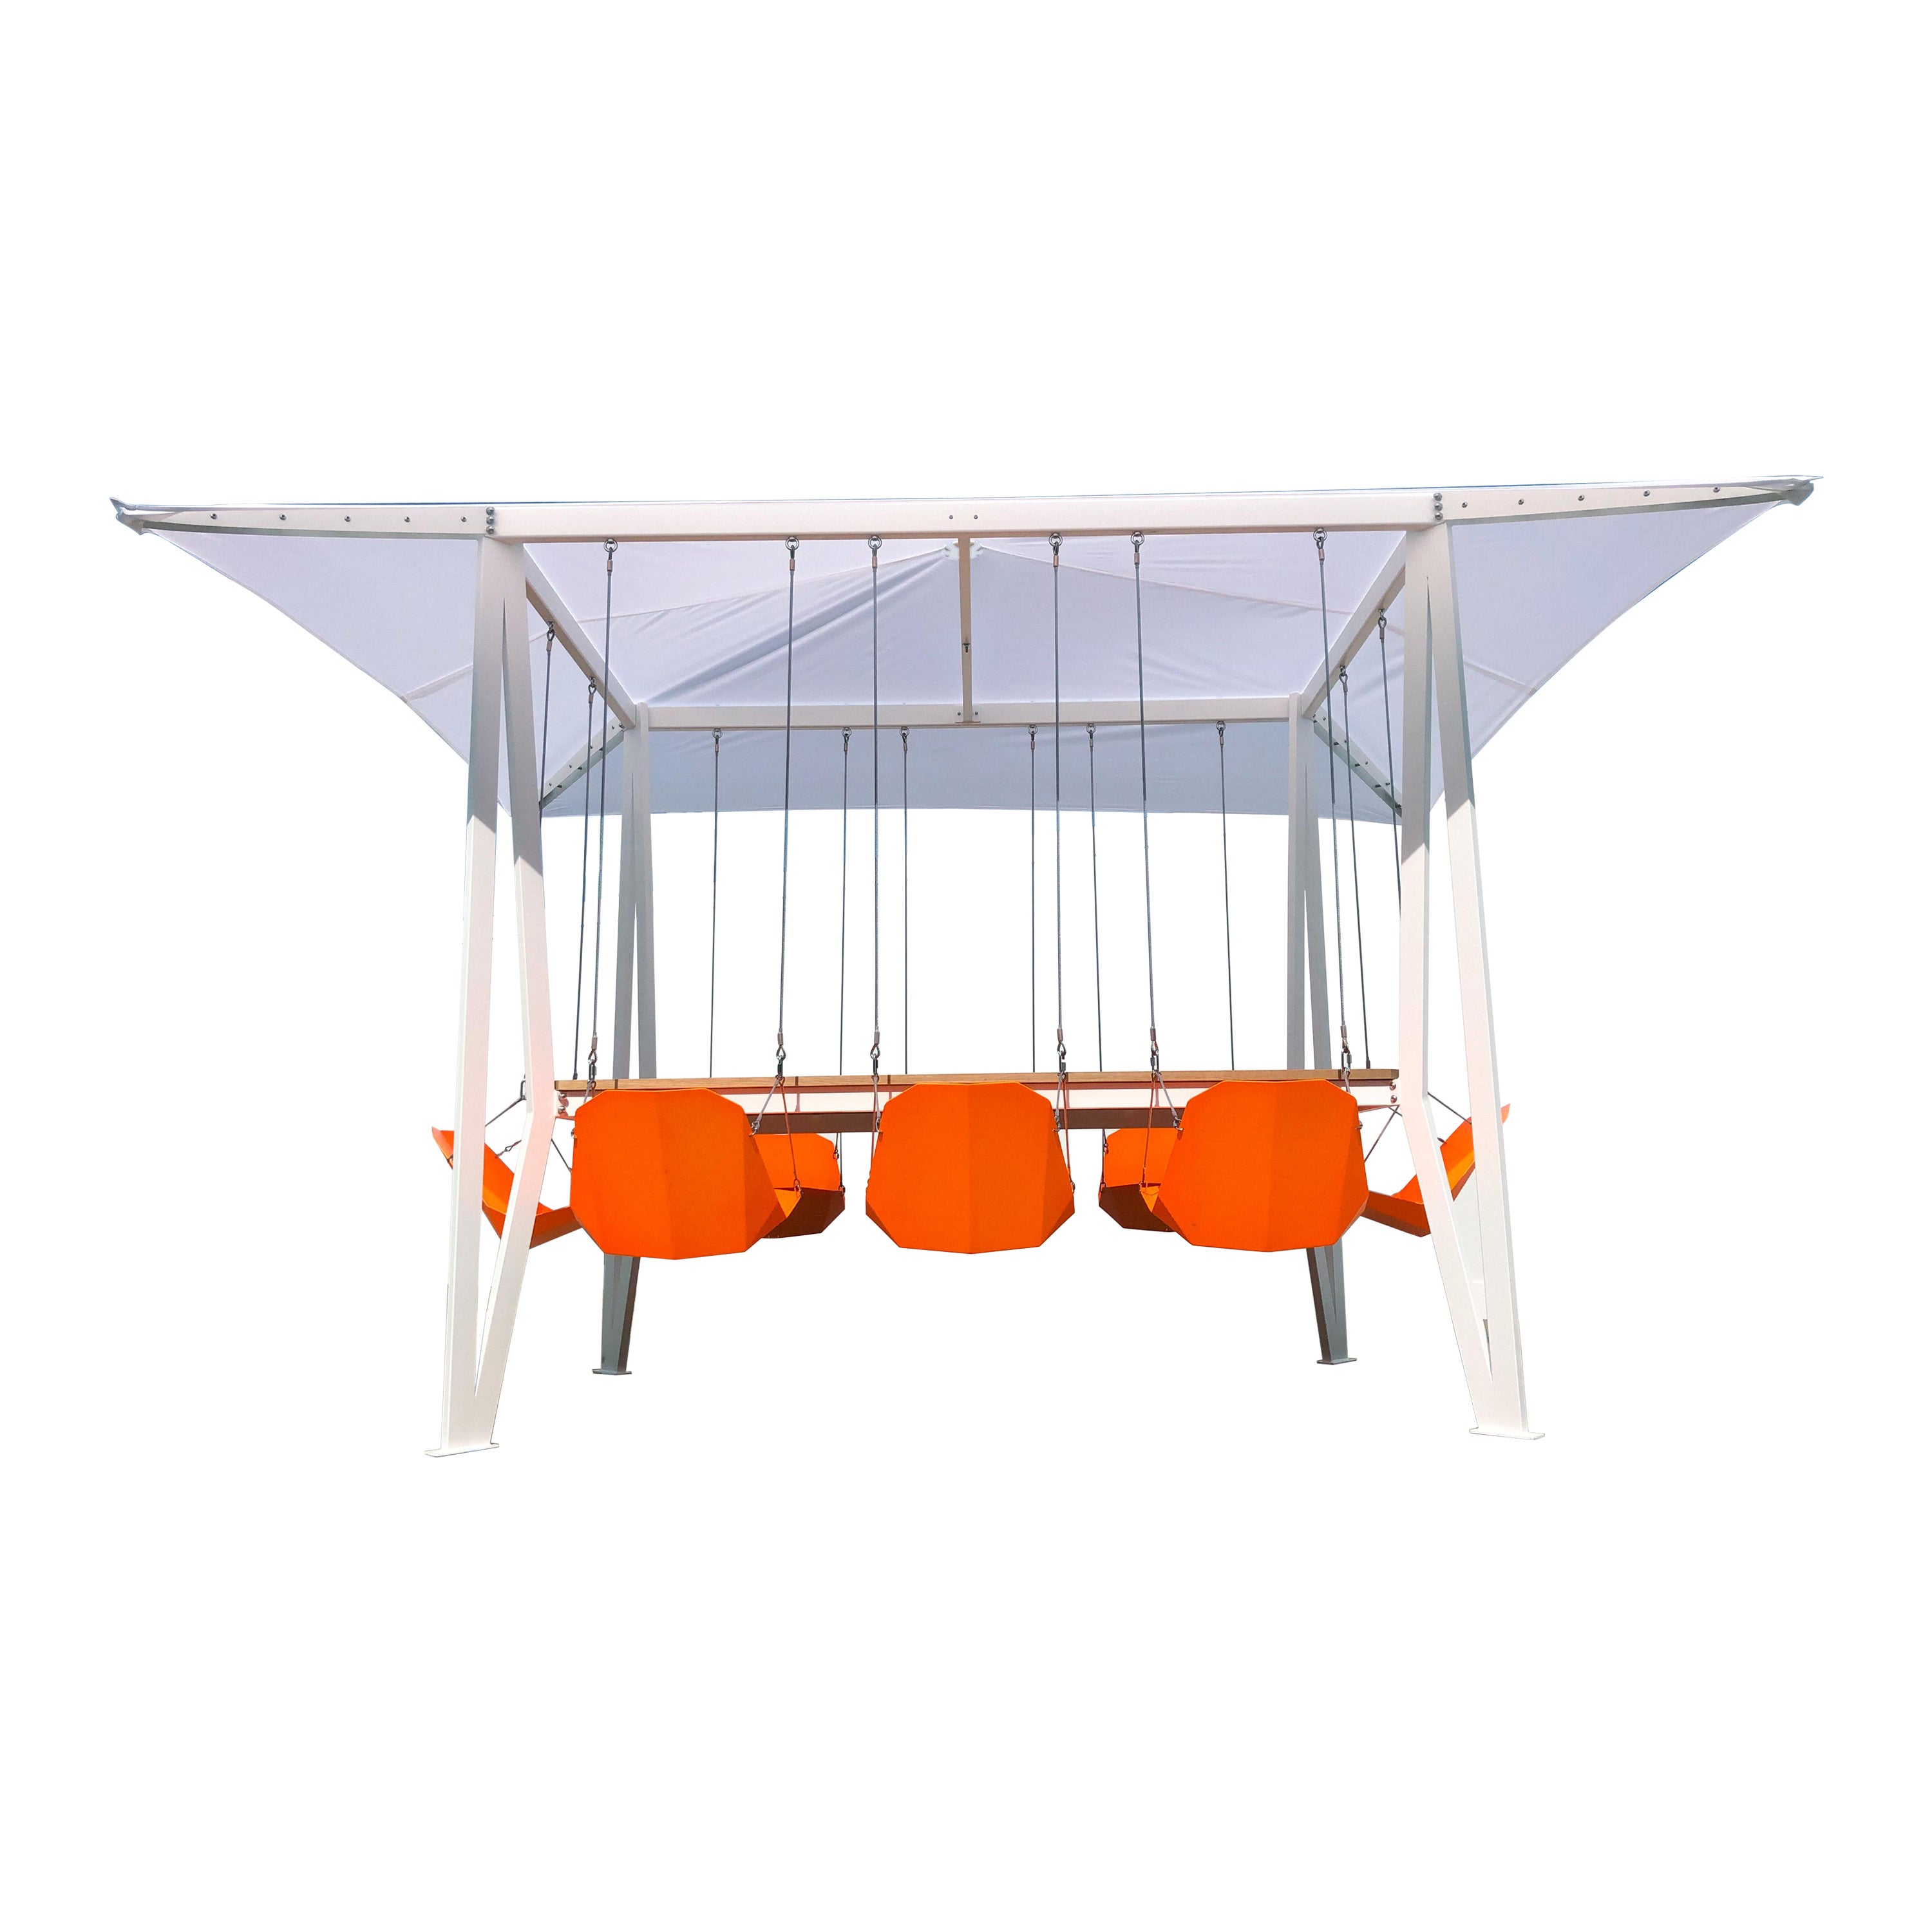 Outdoor-Swing-Tisch mit 8 Sitzern und Tischplatte aus lackierter Ulme